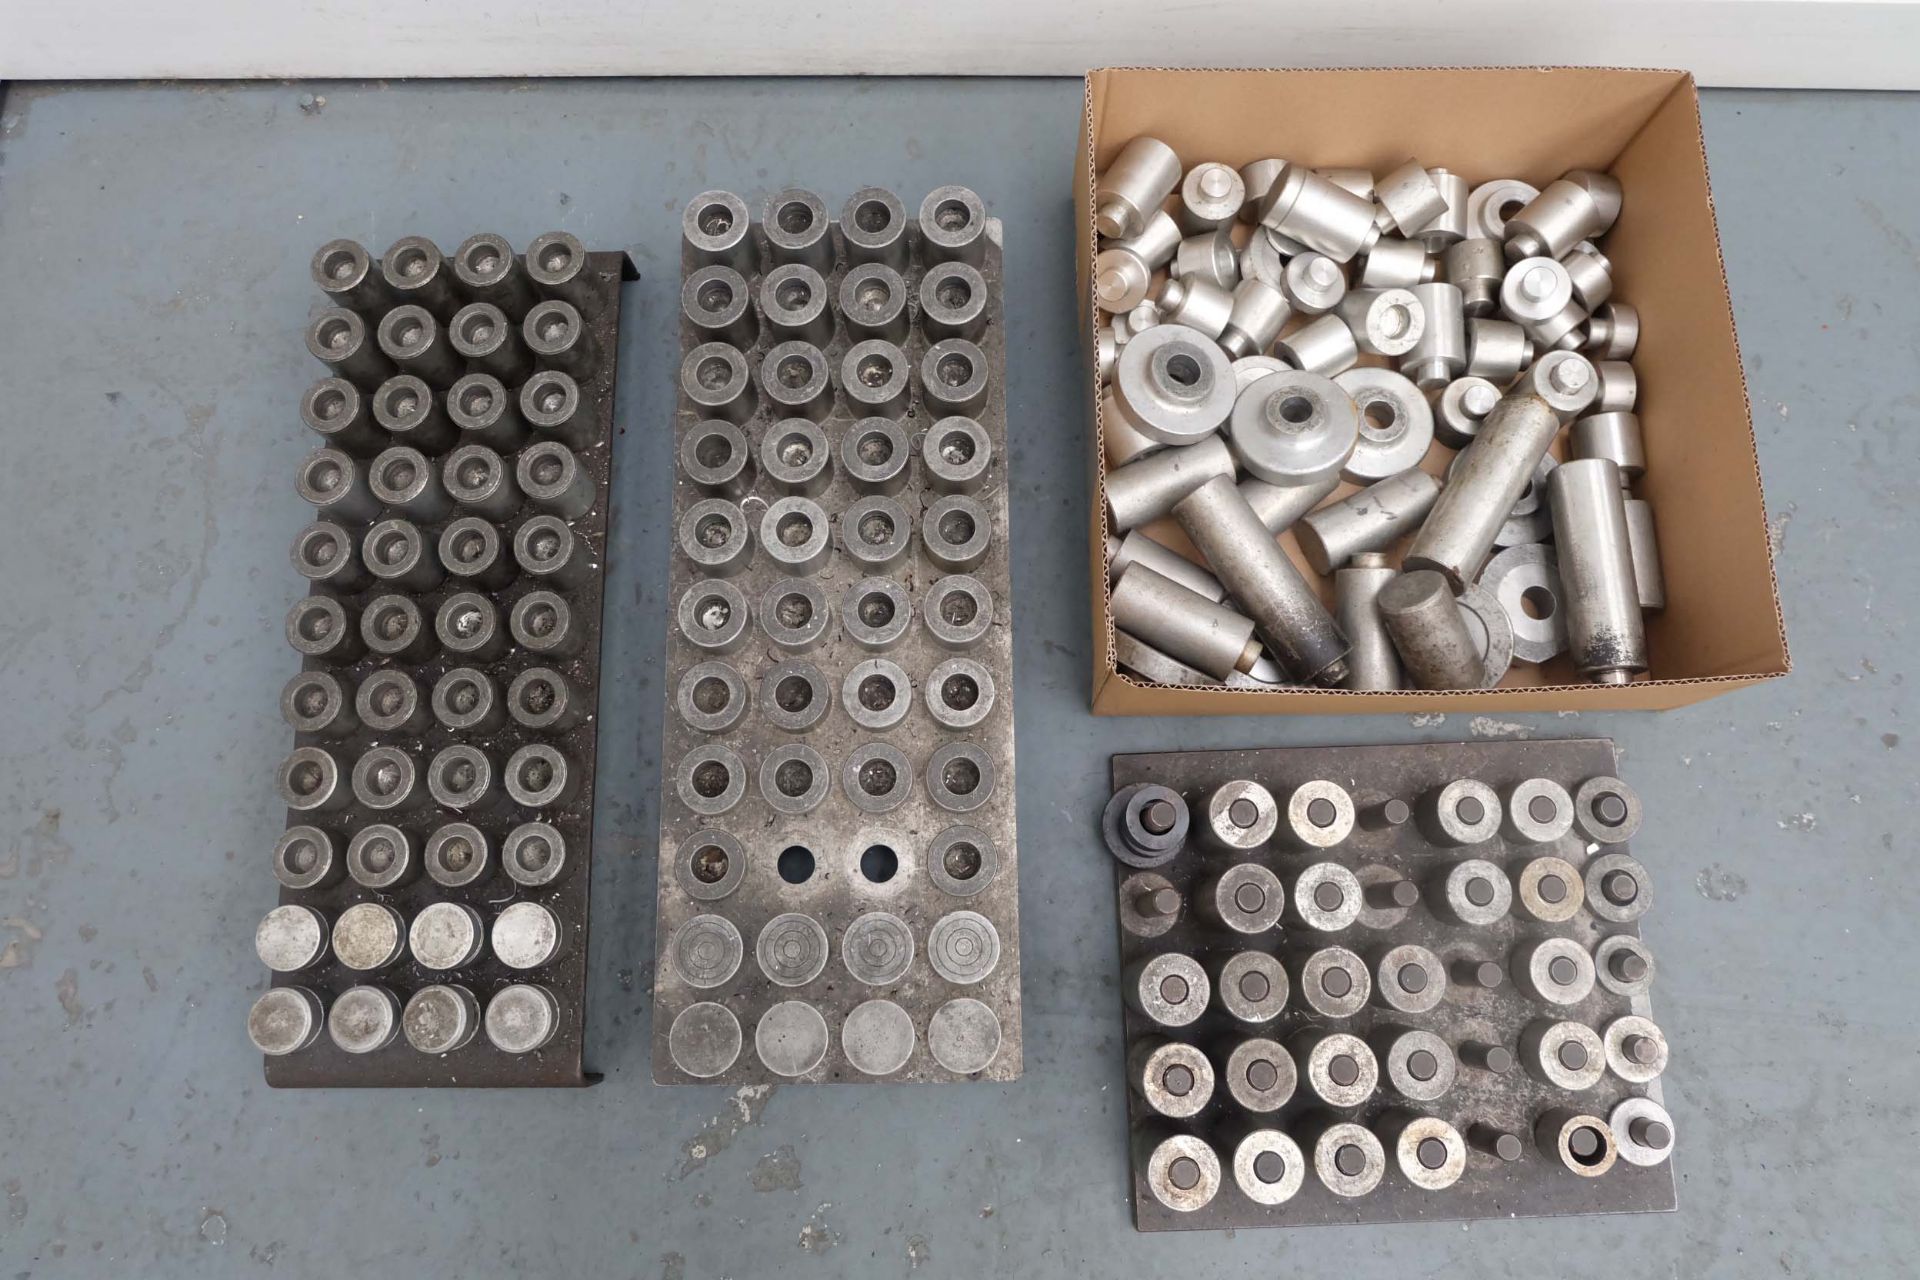 Quantity of Aluminium Packing/Blocking Pieces.